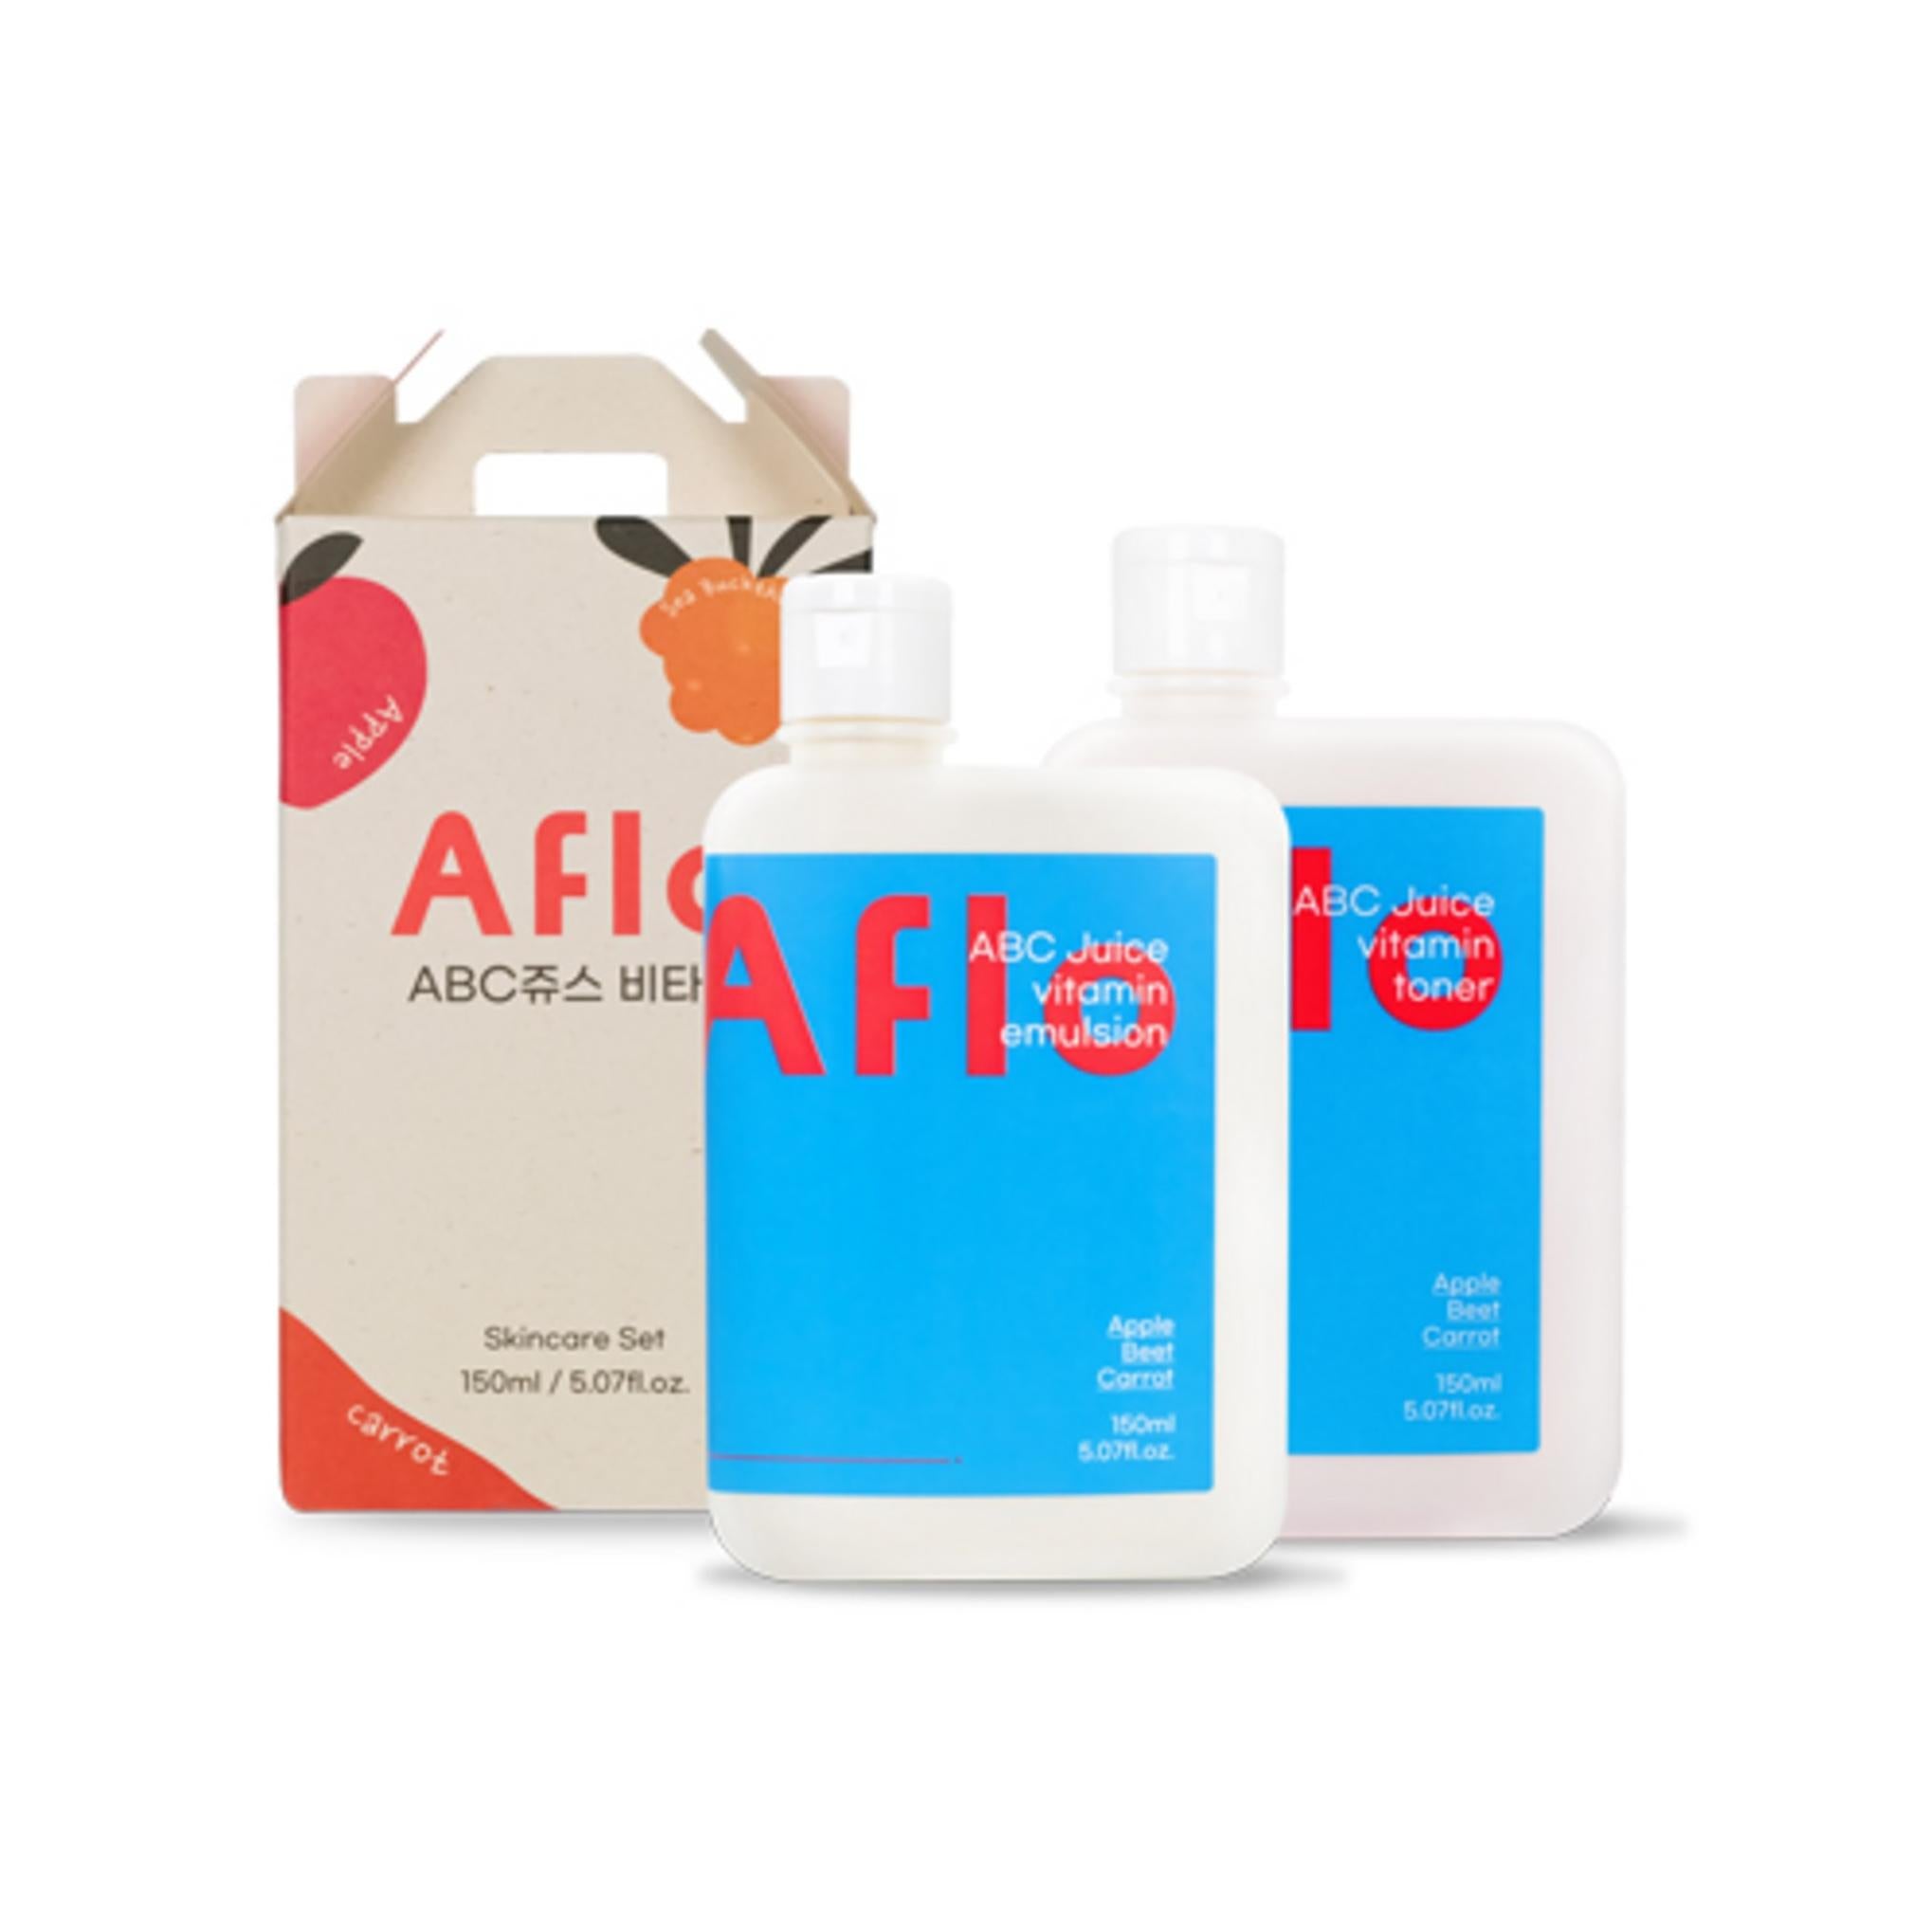 APILO ABC Juice Vitamin Ampoule Toner + Capsule Emulsion Cosmetics 150ml